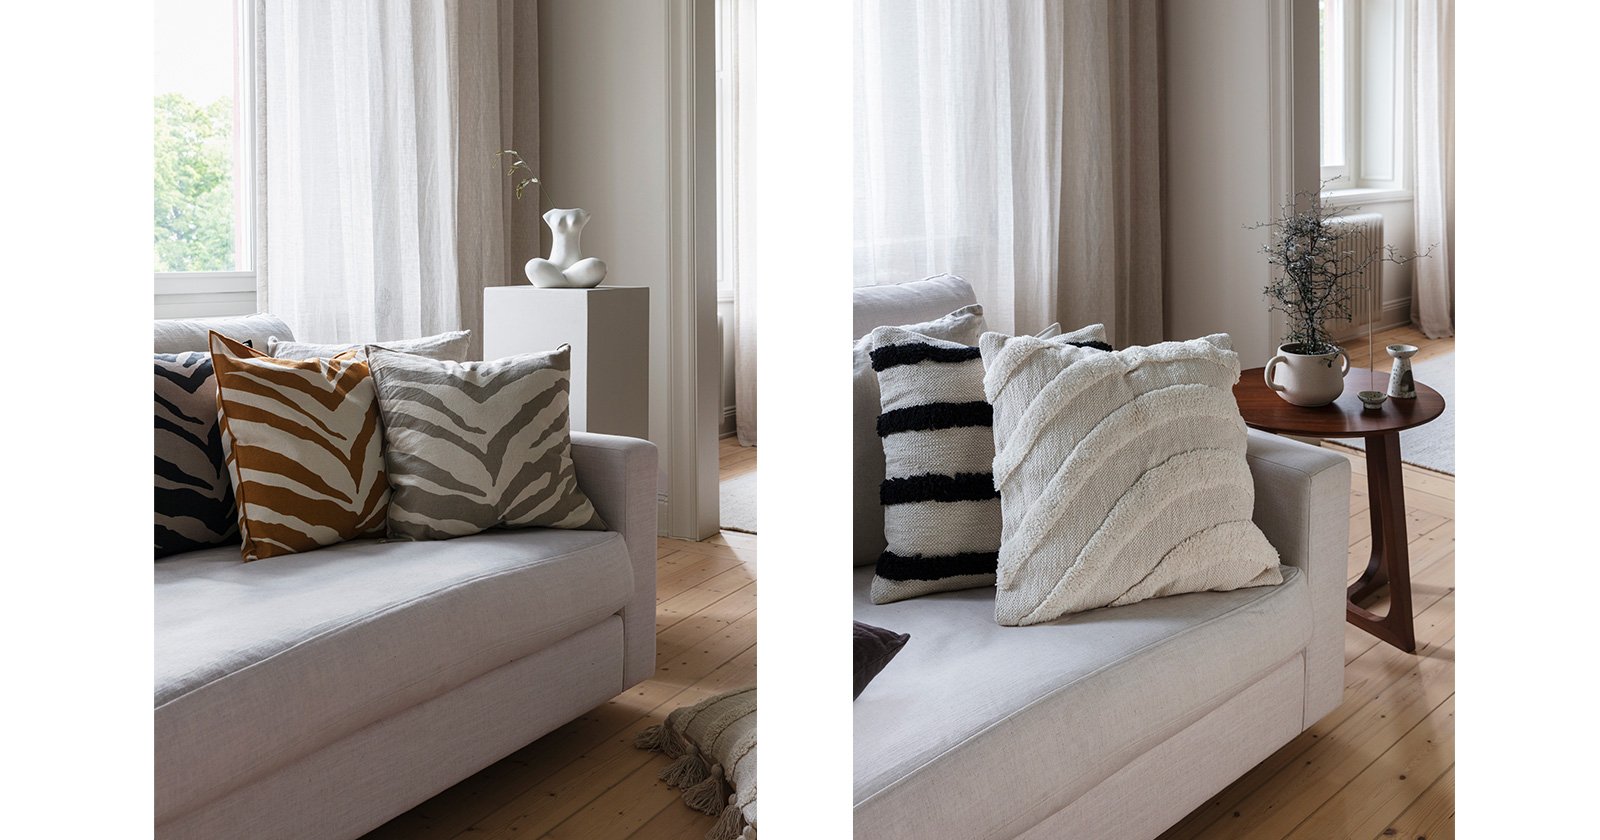 Three zebra printed cushions in on a white sofa